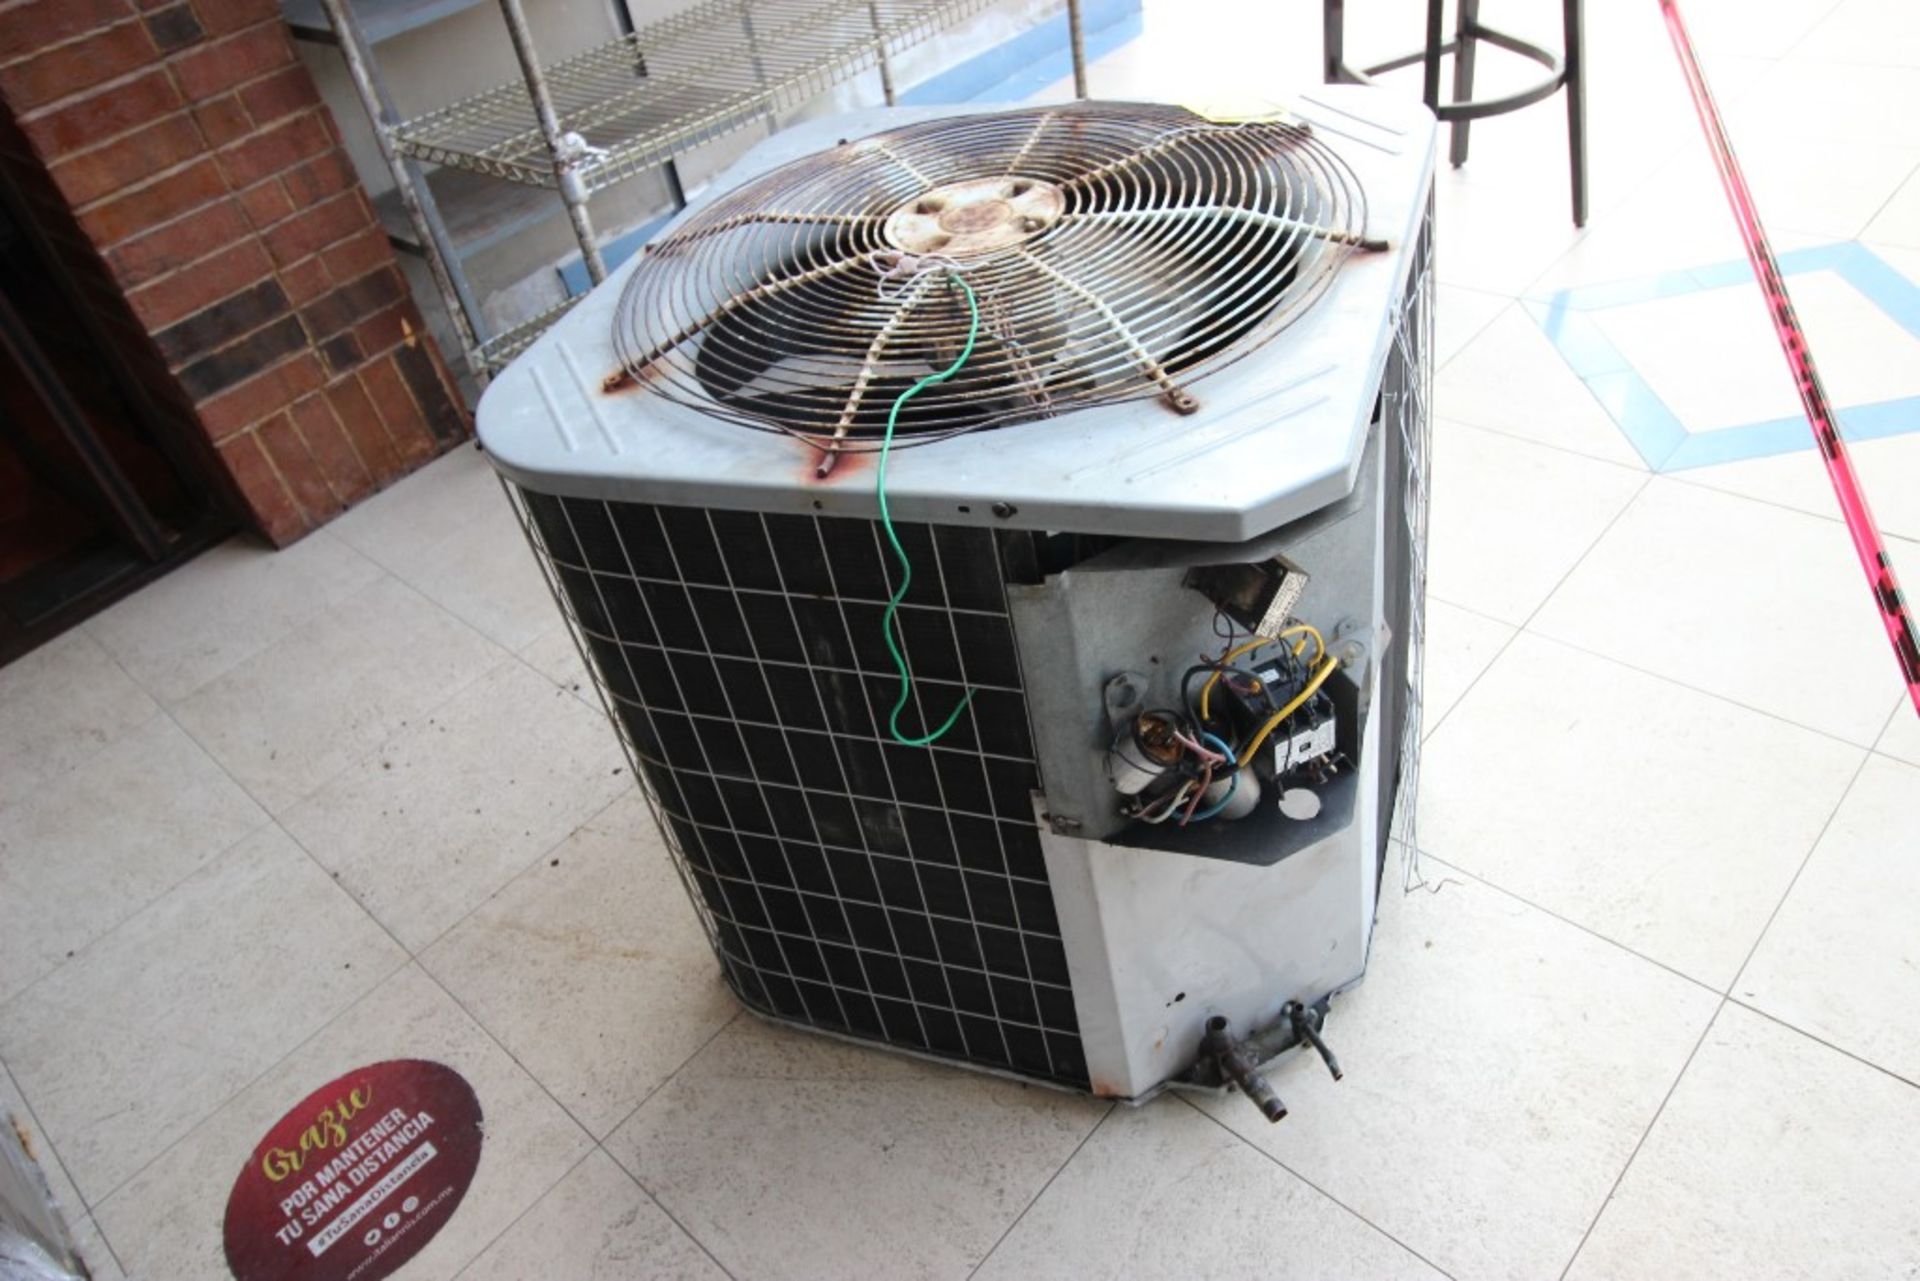 3 Unidades Condensadoras para aire acondicionado de un ventilador marca York, modelo:YCJD36S41S1A, - Image 15 of 19